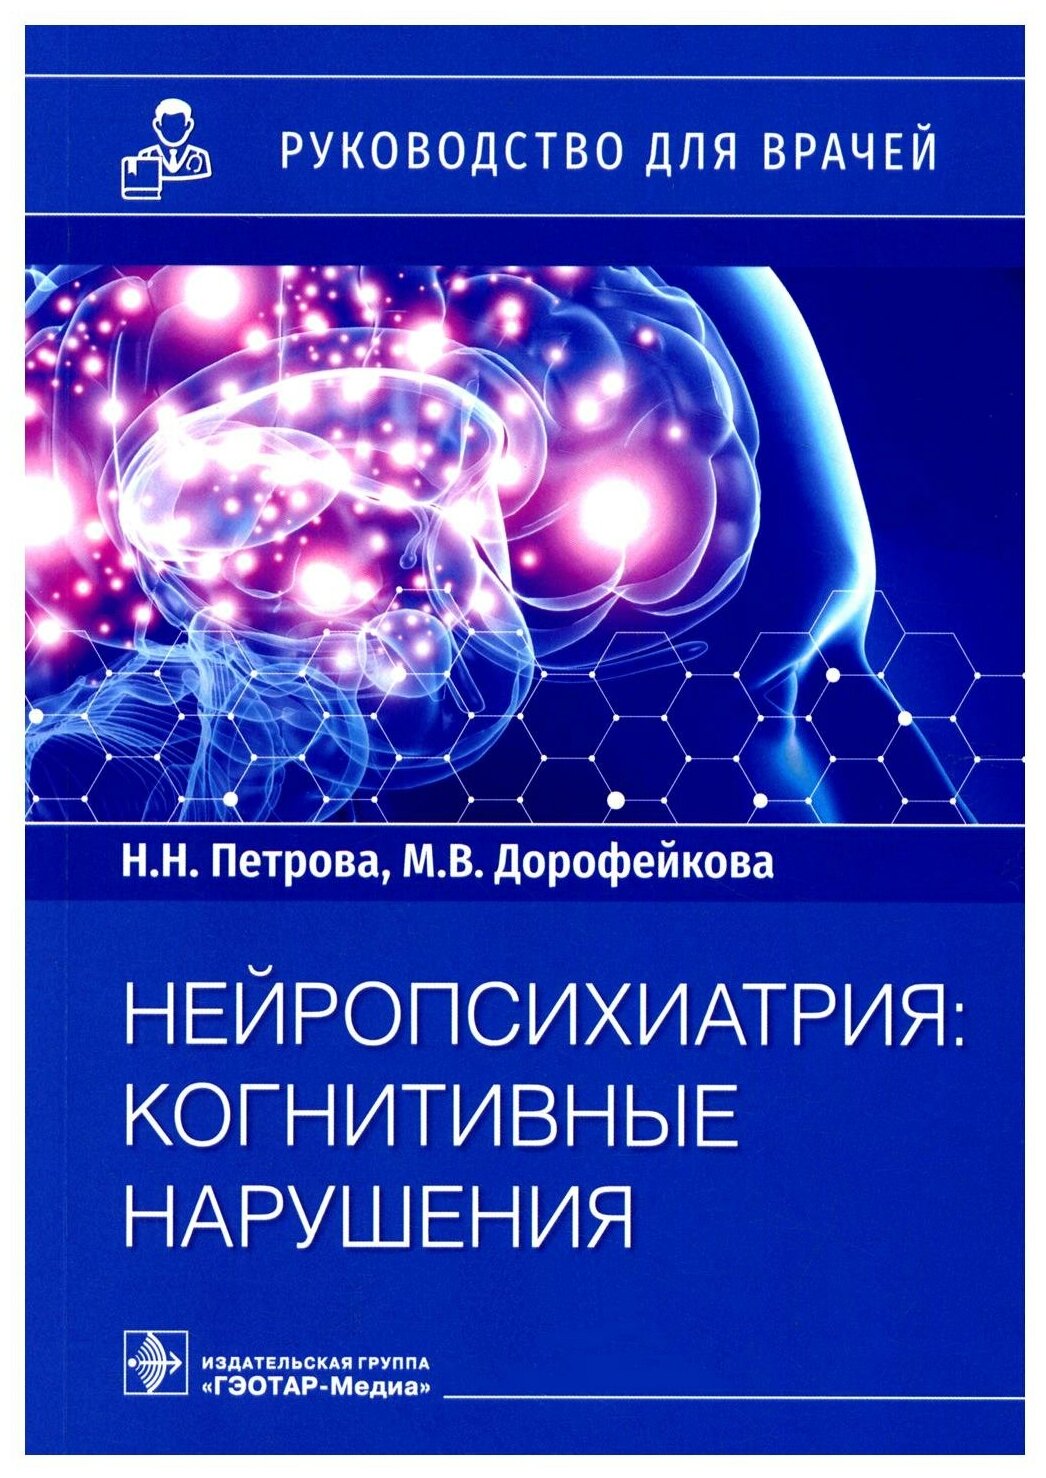 Нейропсихиатрия: когнитивные нарушения. Руководство для врачей